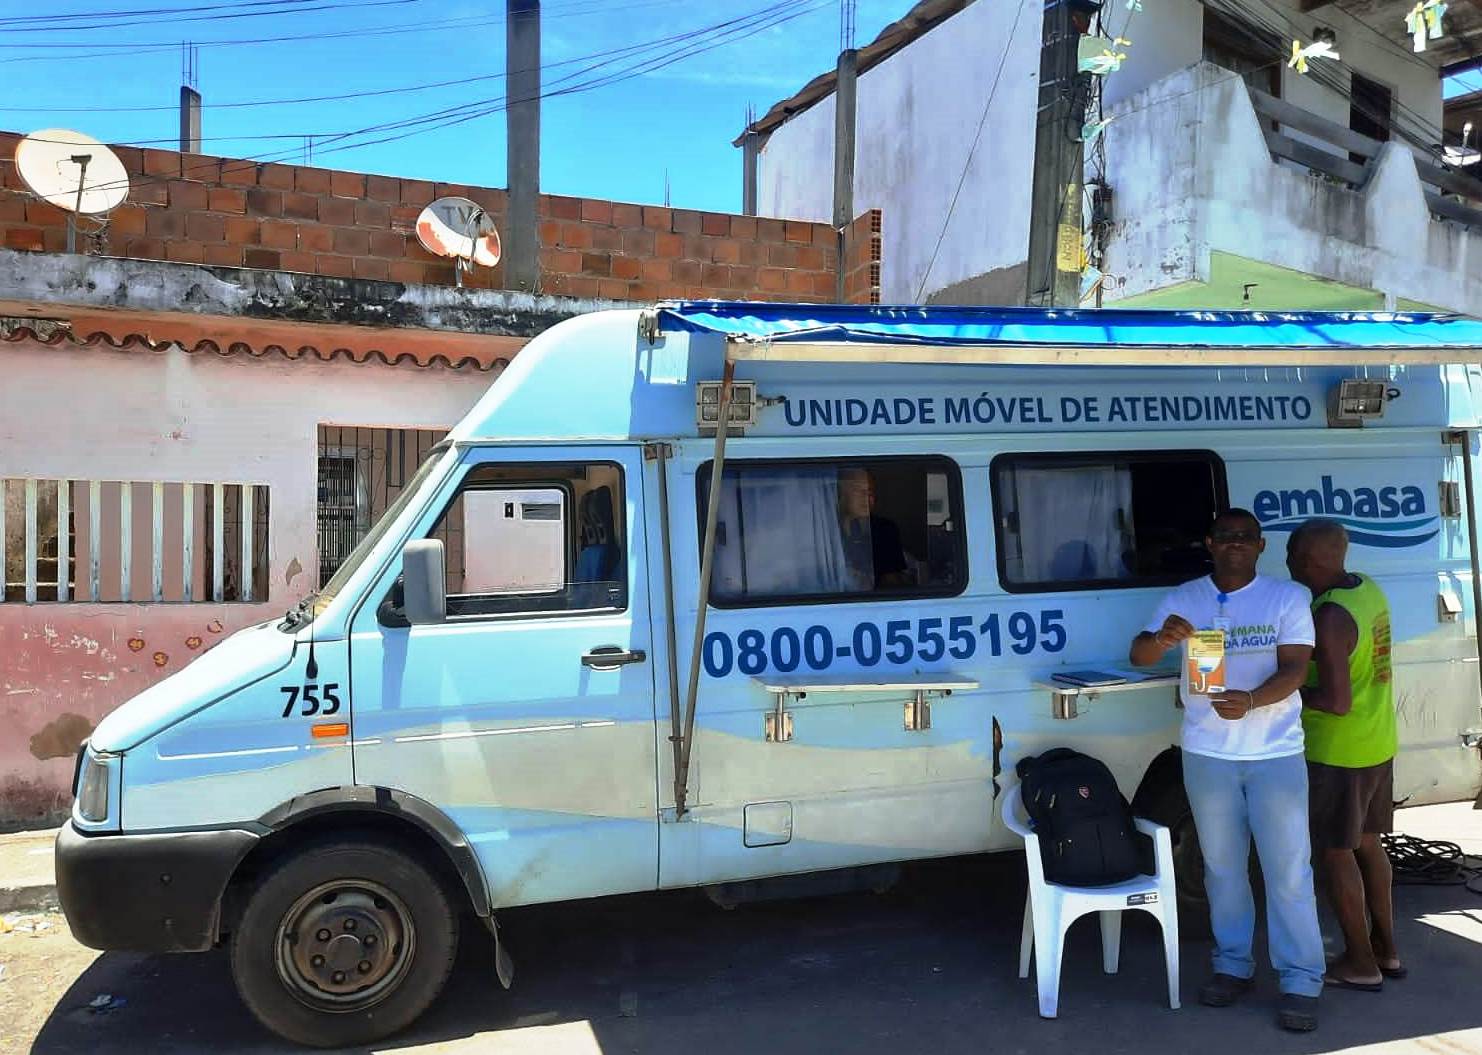 Salvador: Unidade Móvel da Embasa atende na comunidade da Santa Cruz